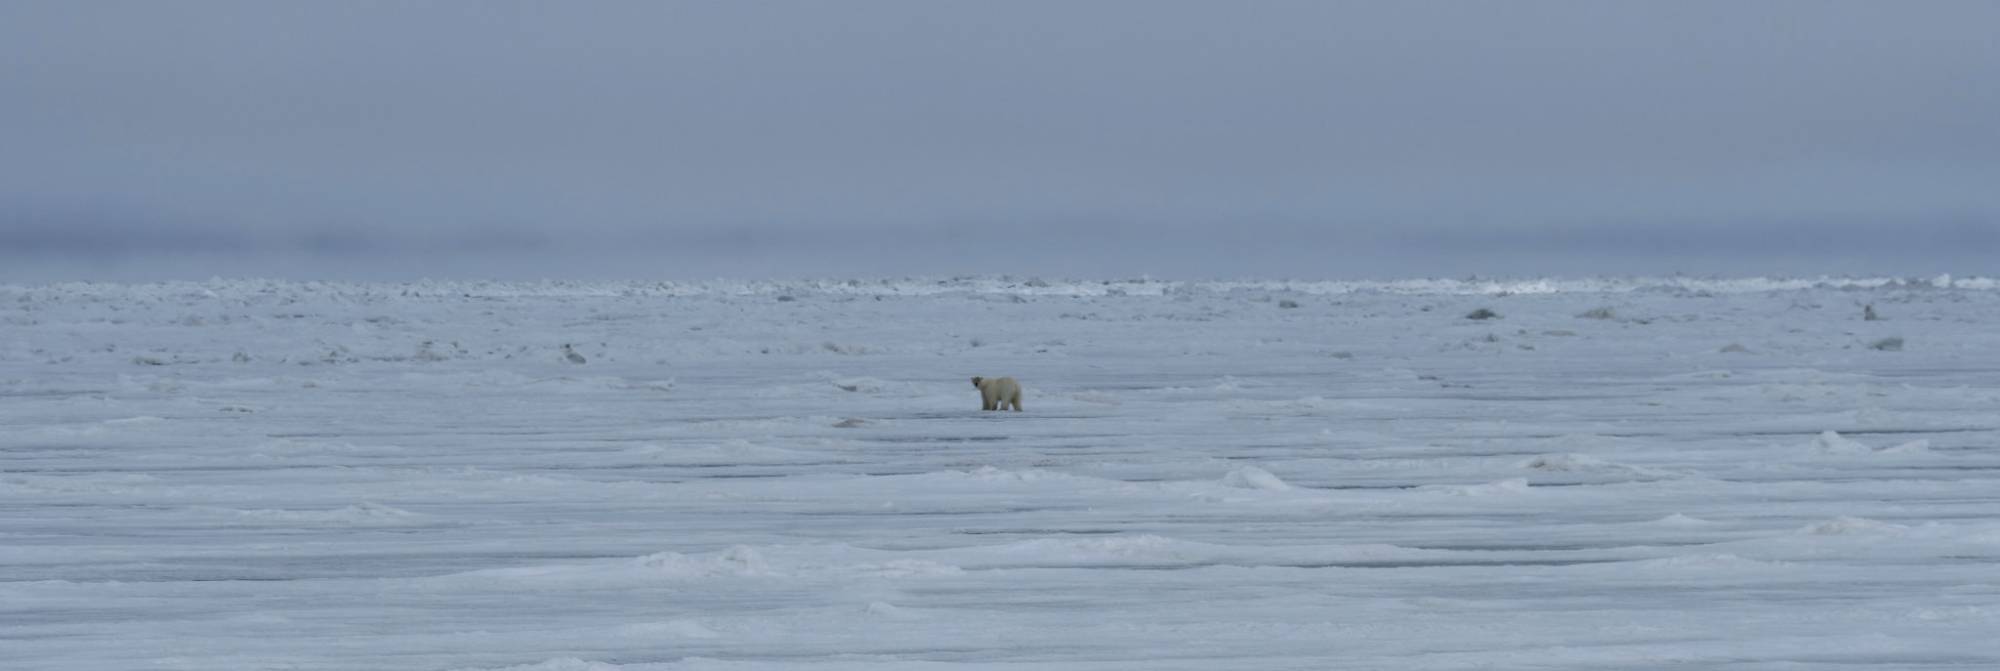 Polar bear out on the ice